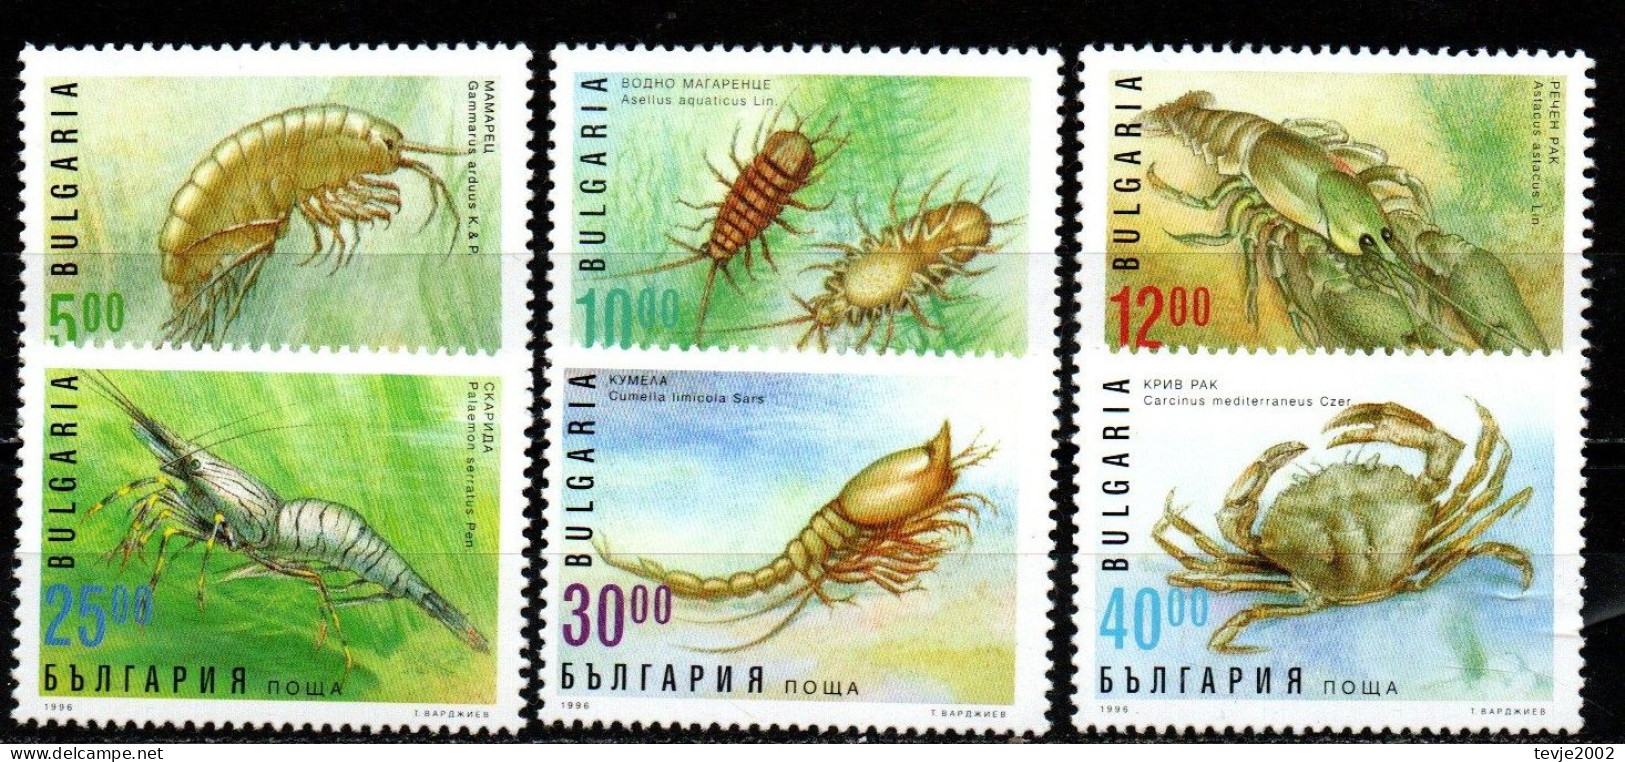 Bulgarien 1996 - Mi.Nr. 4238 - 4243 - Postfrisch MNH - Tiere Animals Krabben Crabs - Schalentiere